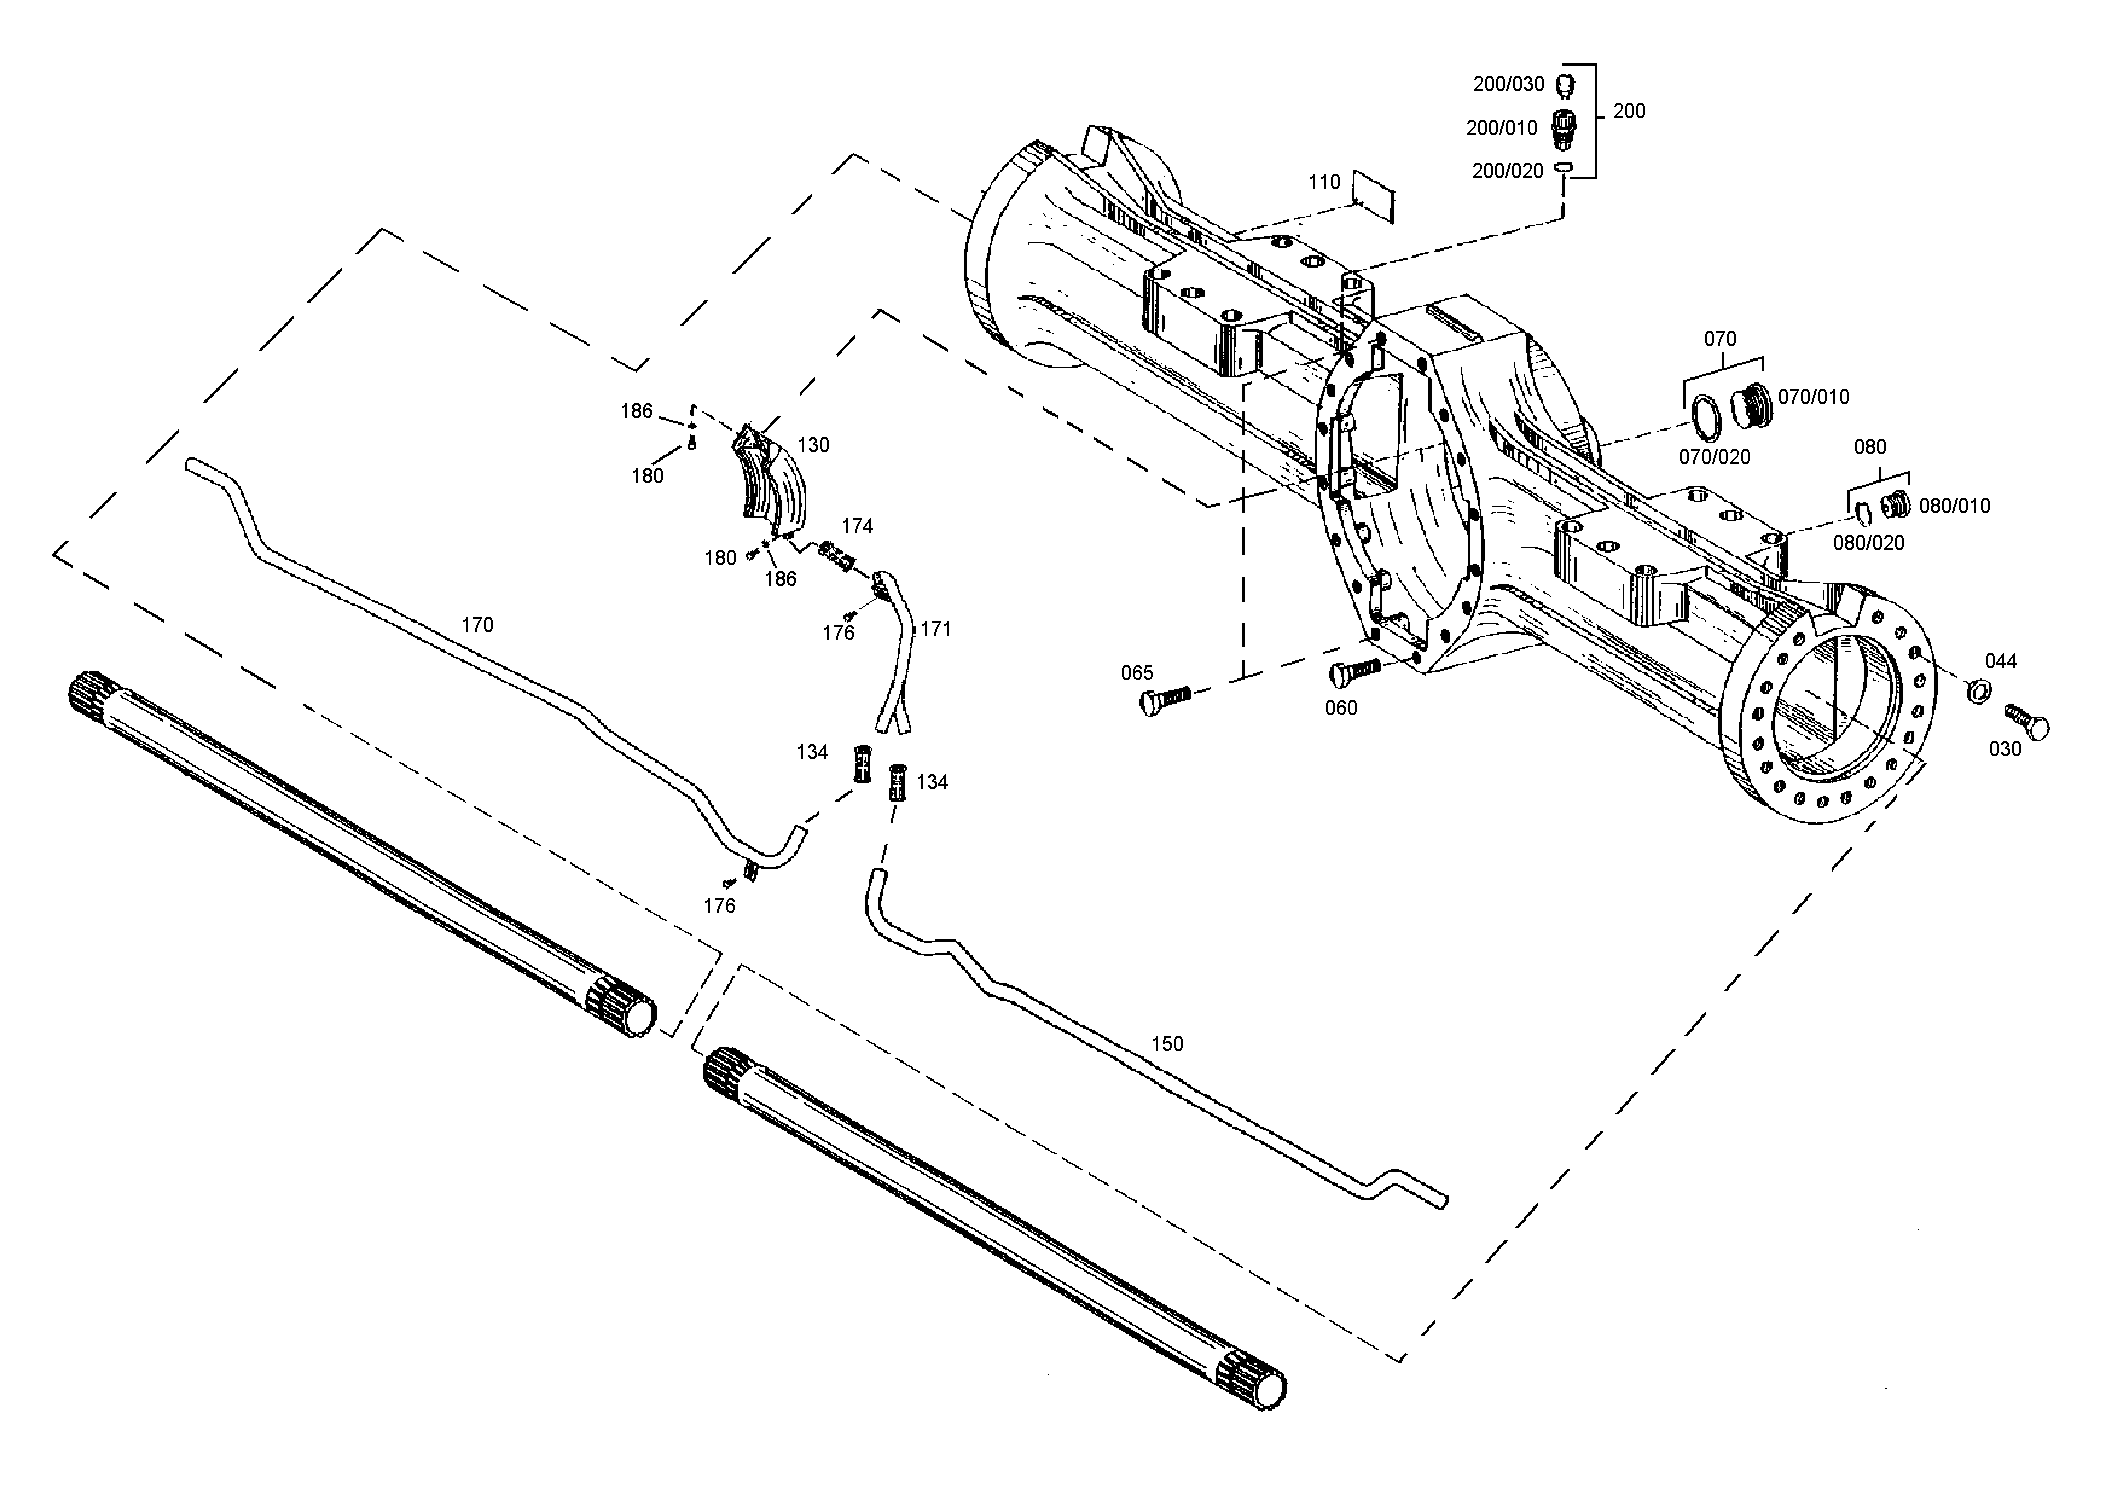 drawing for SCHOPF MASCHINENBAU GMBH 28611 - WASHER (figure 3)